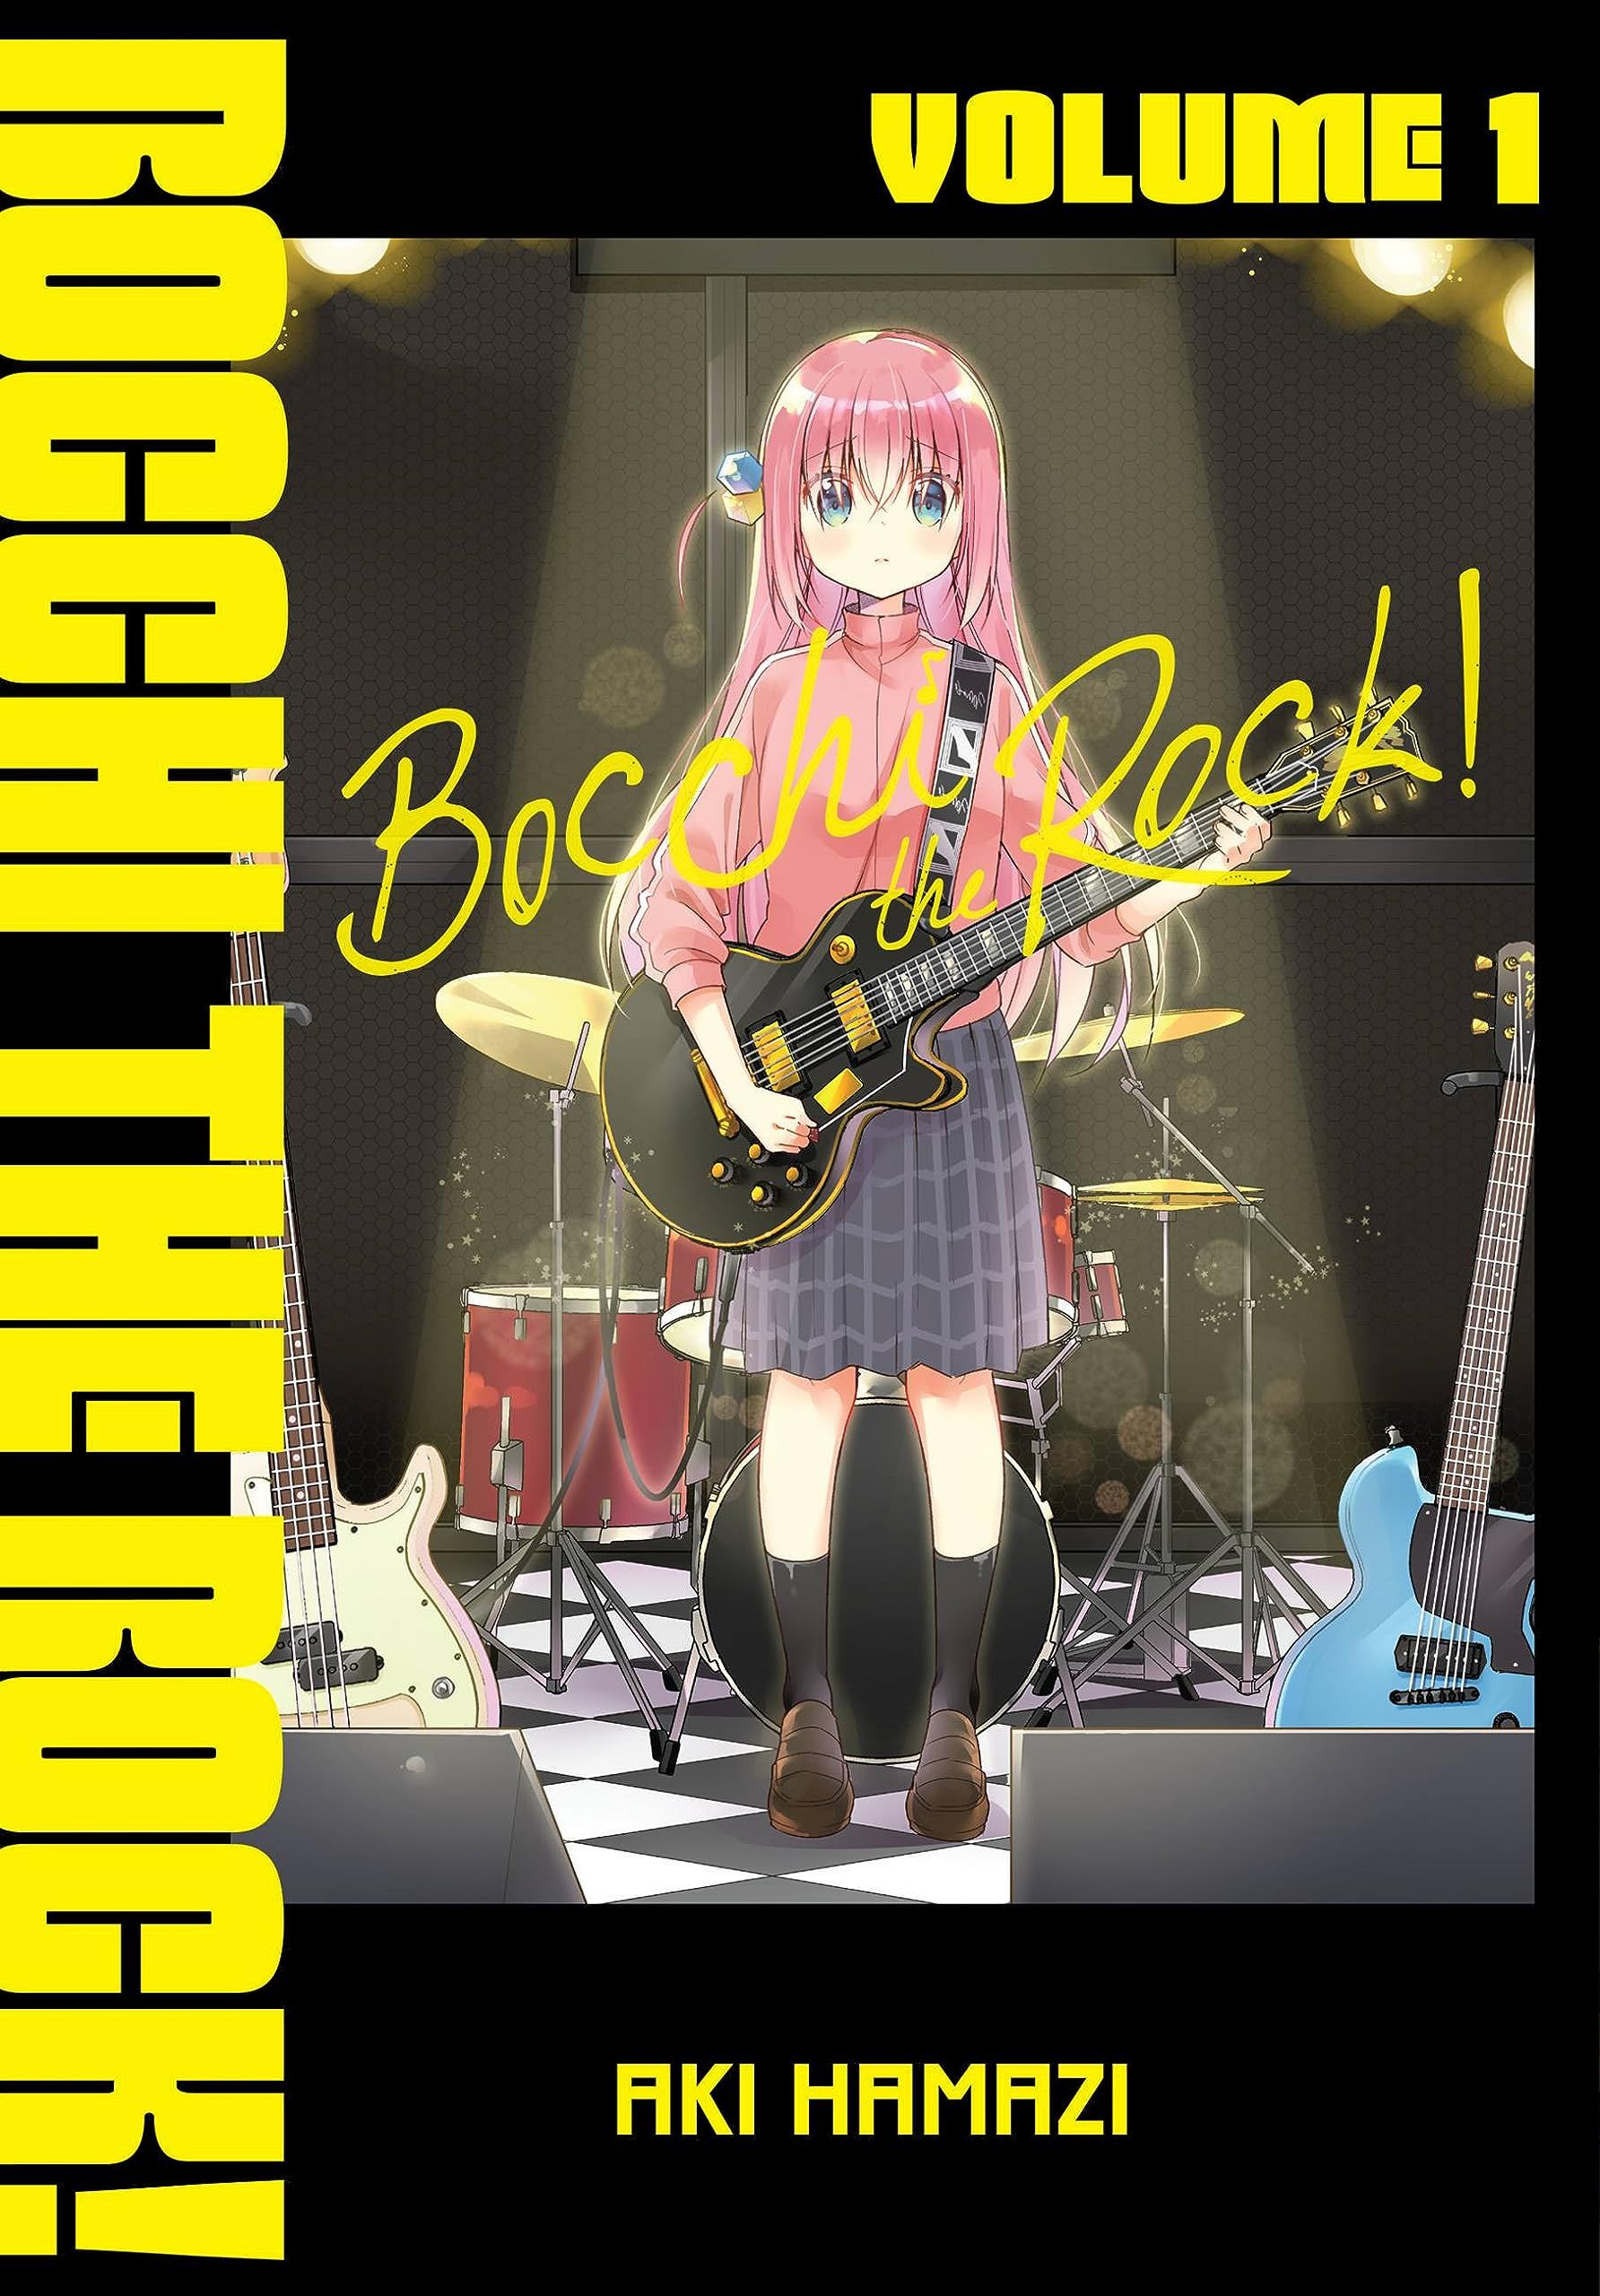 Bocchi the Rock! by Aki Hamazi cover